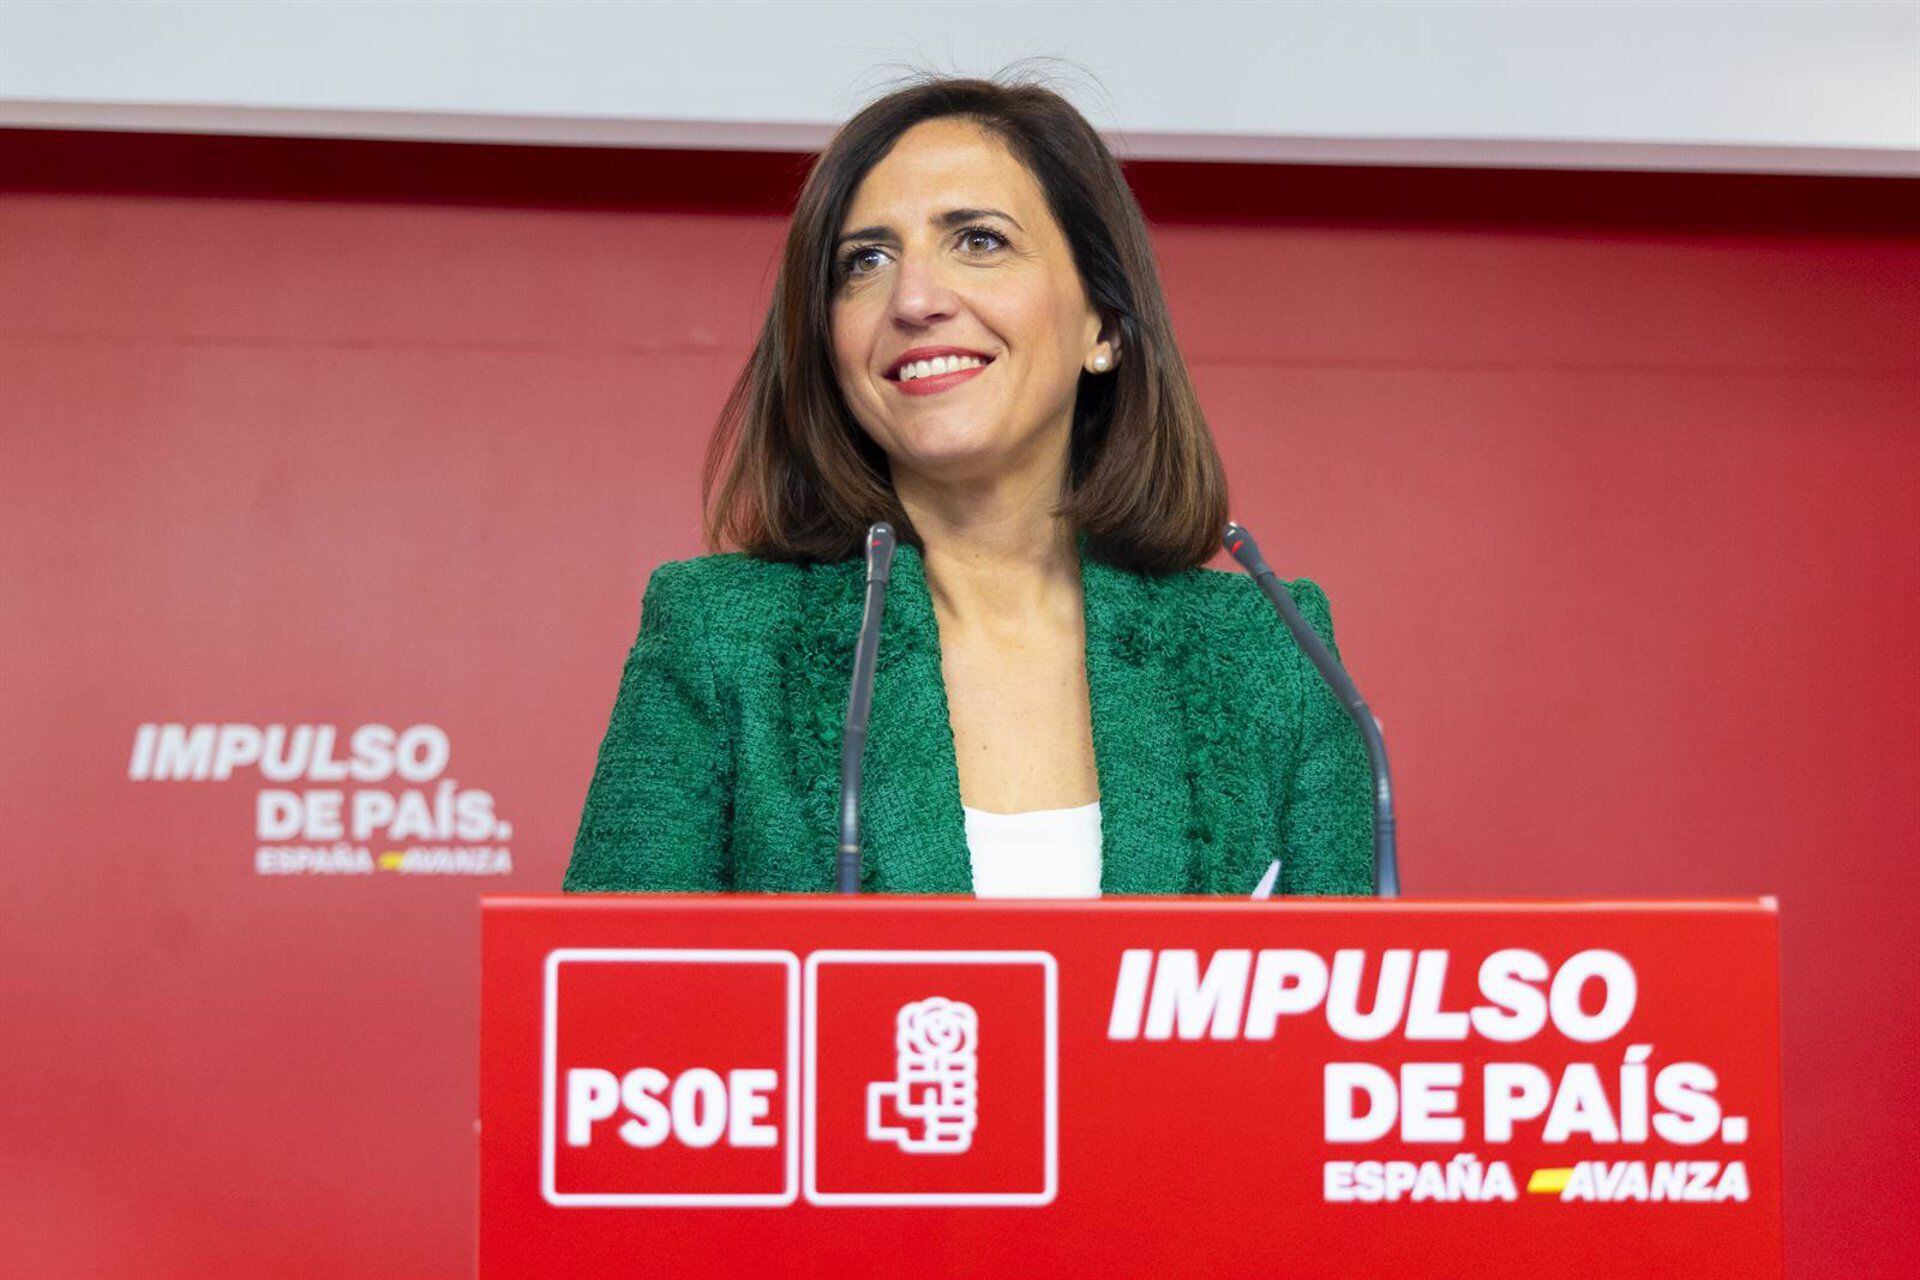 La portavoz del PSOE, Esther Peña, en rueda de prensa. (Eva Ercolanese/PSOE)